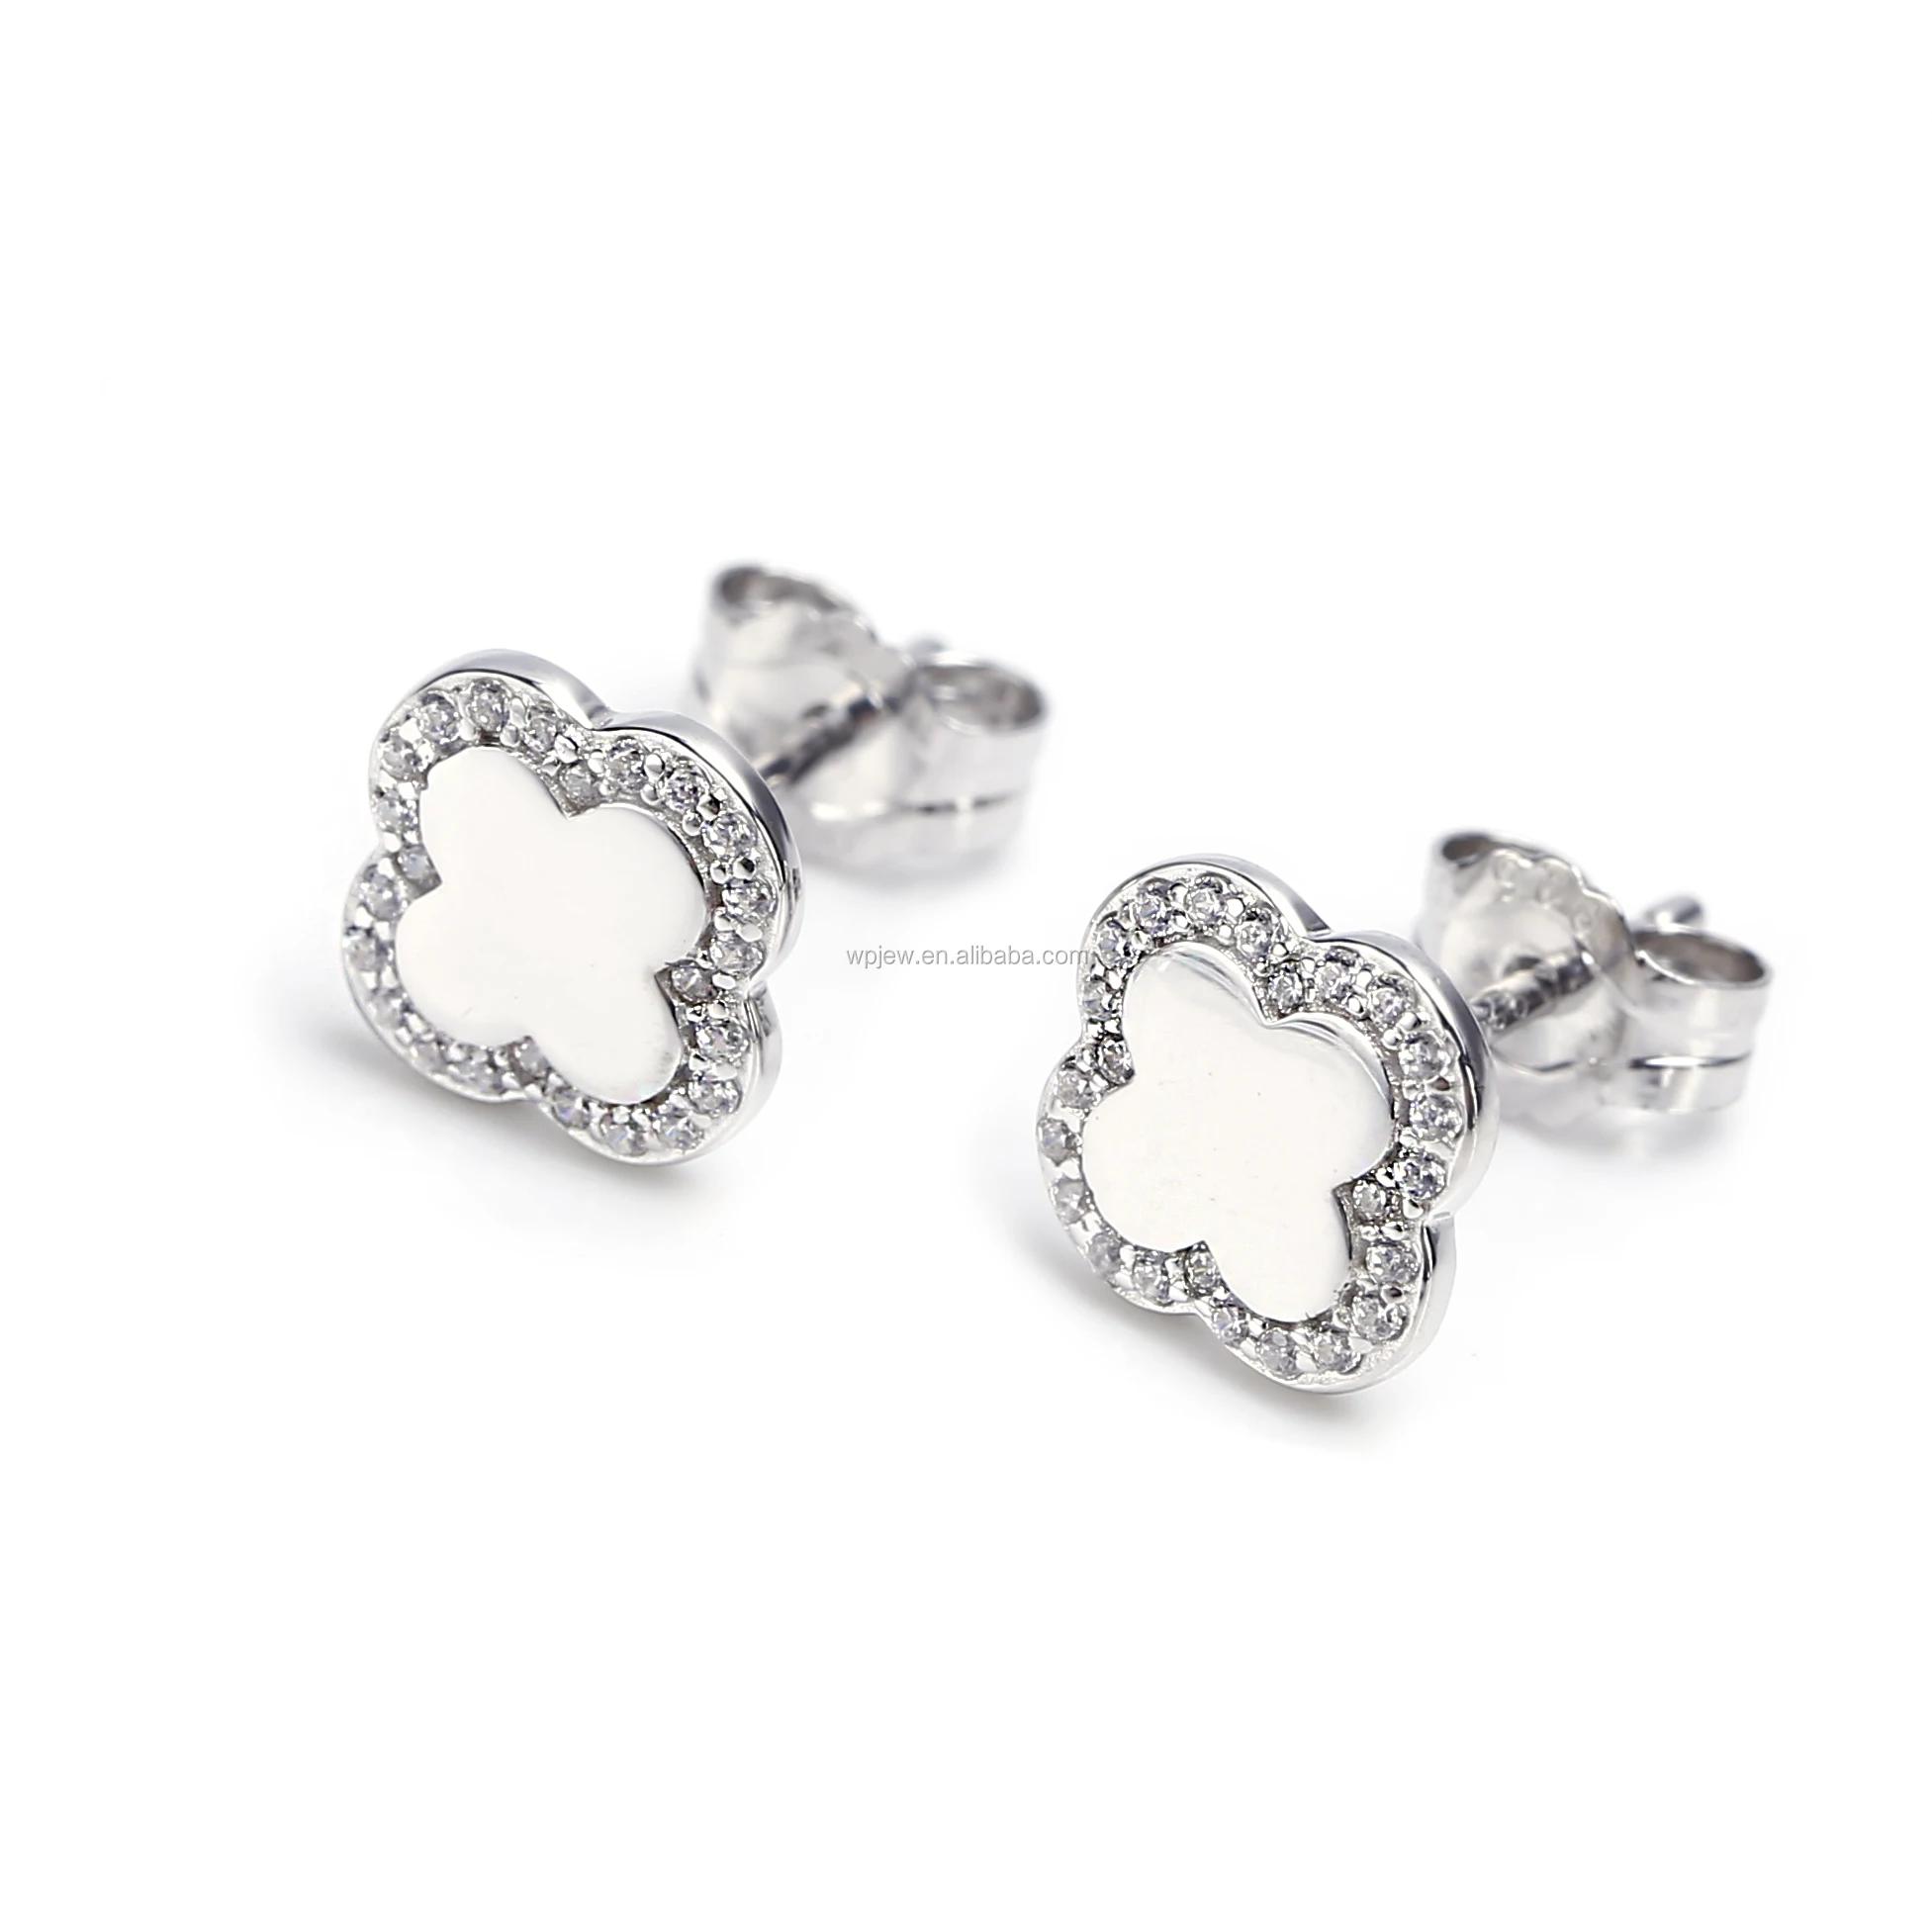 JewelryVolt 925 Sterling Silver CZ Earrings Leaf Clear CZ Accent Fishhook Dangling Earrings 